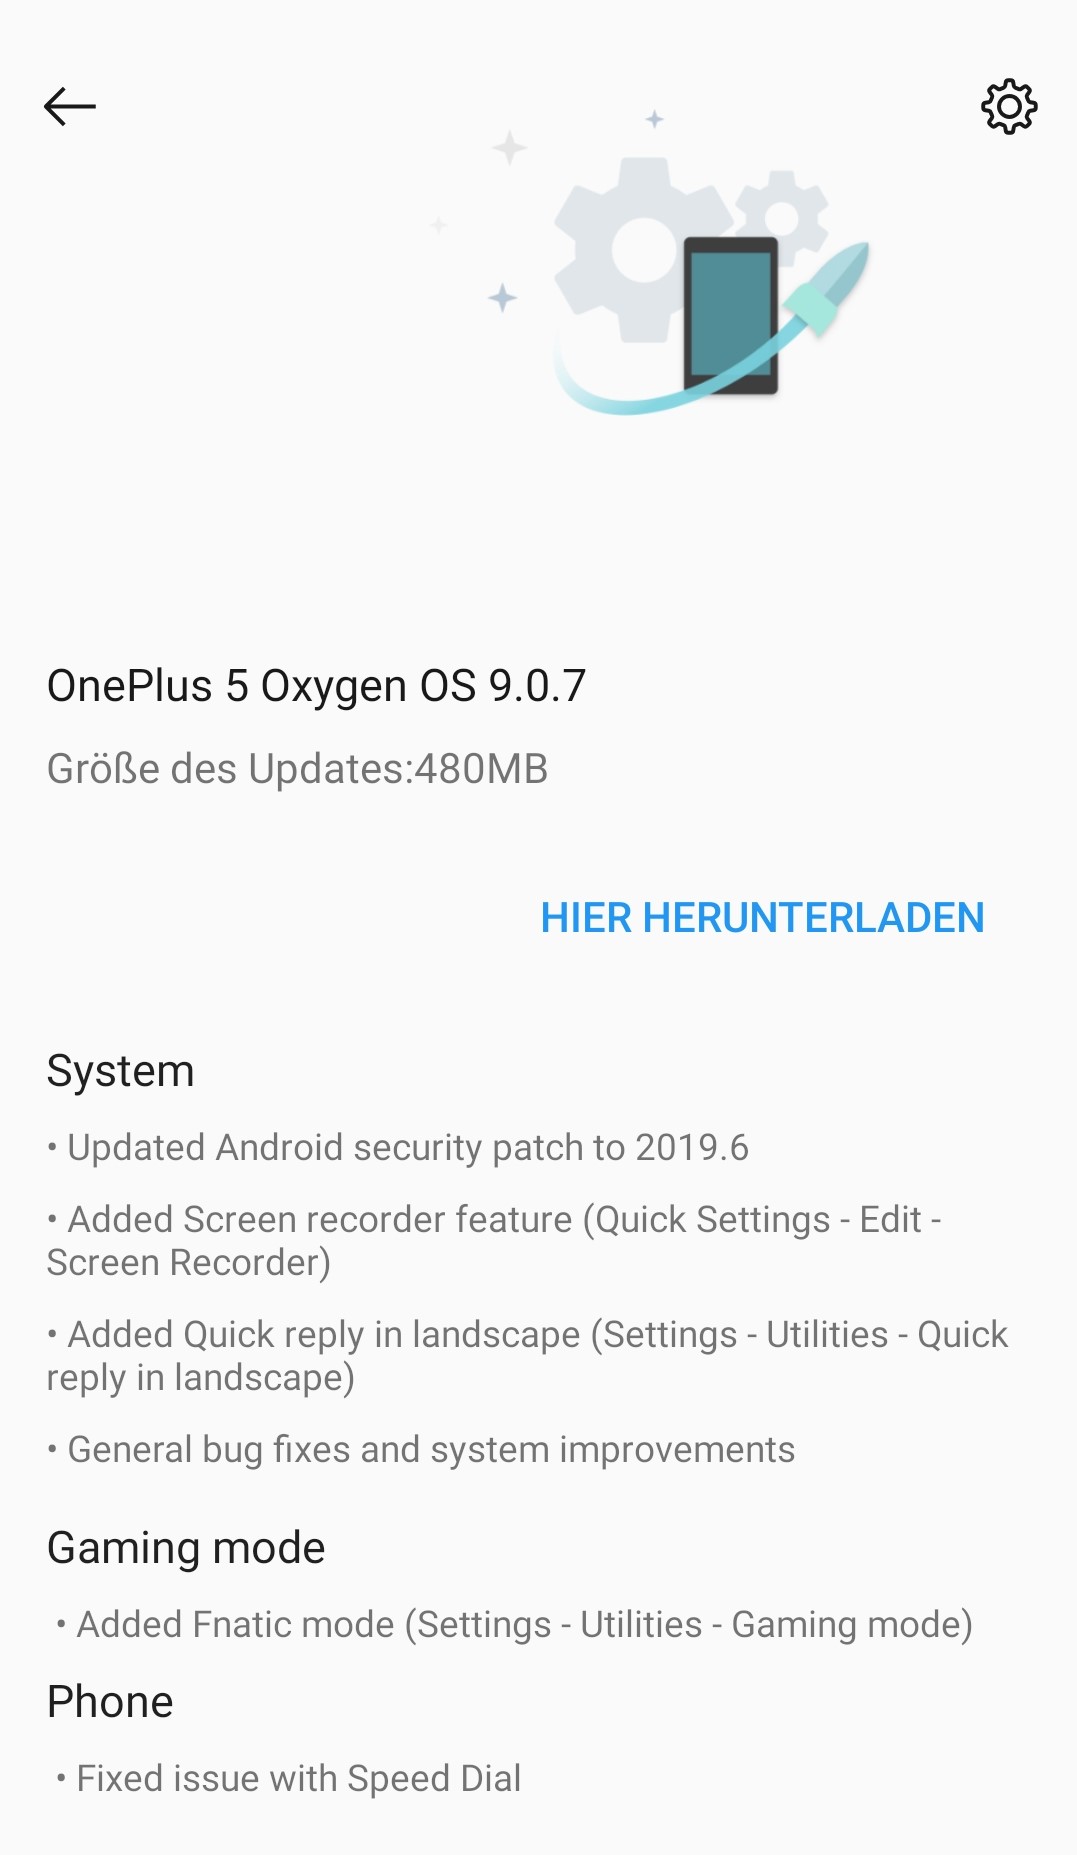 Oneplus 5 - OxygenOS 9.0.7